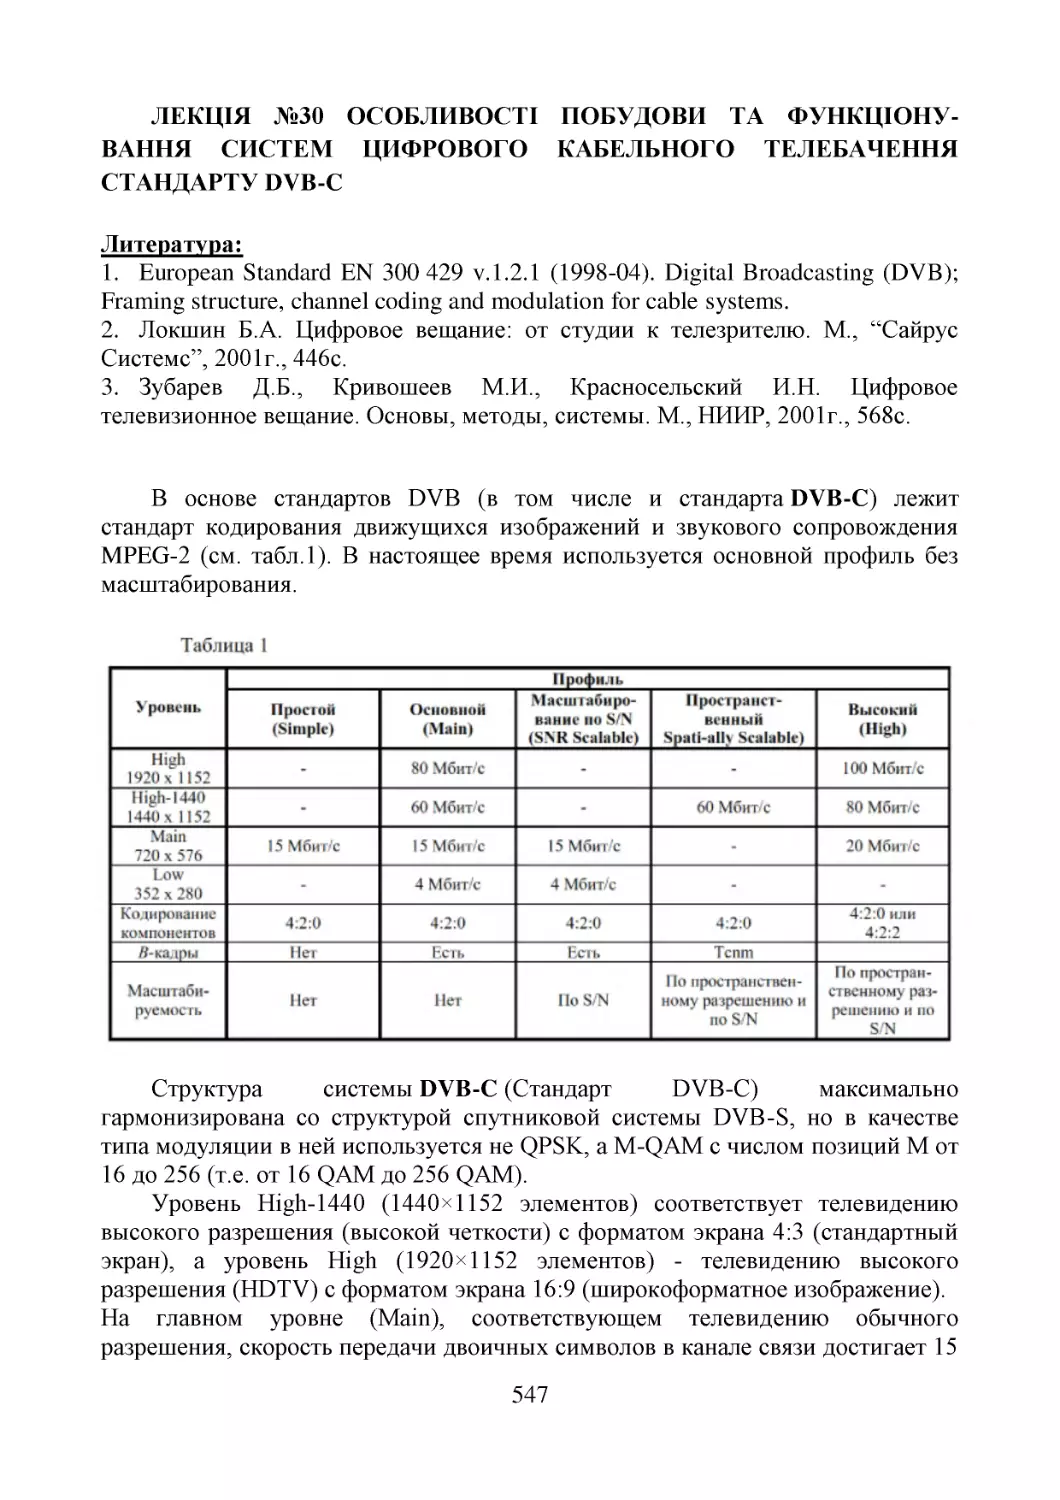 ﻿ЛЕКЦІЯ №30 Основные сведения о стандарте DVB-